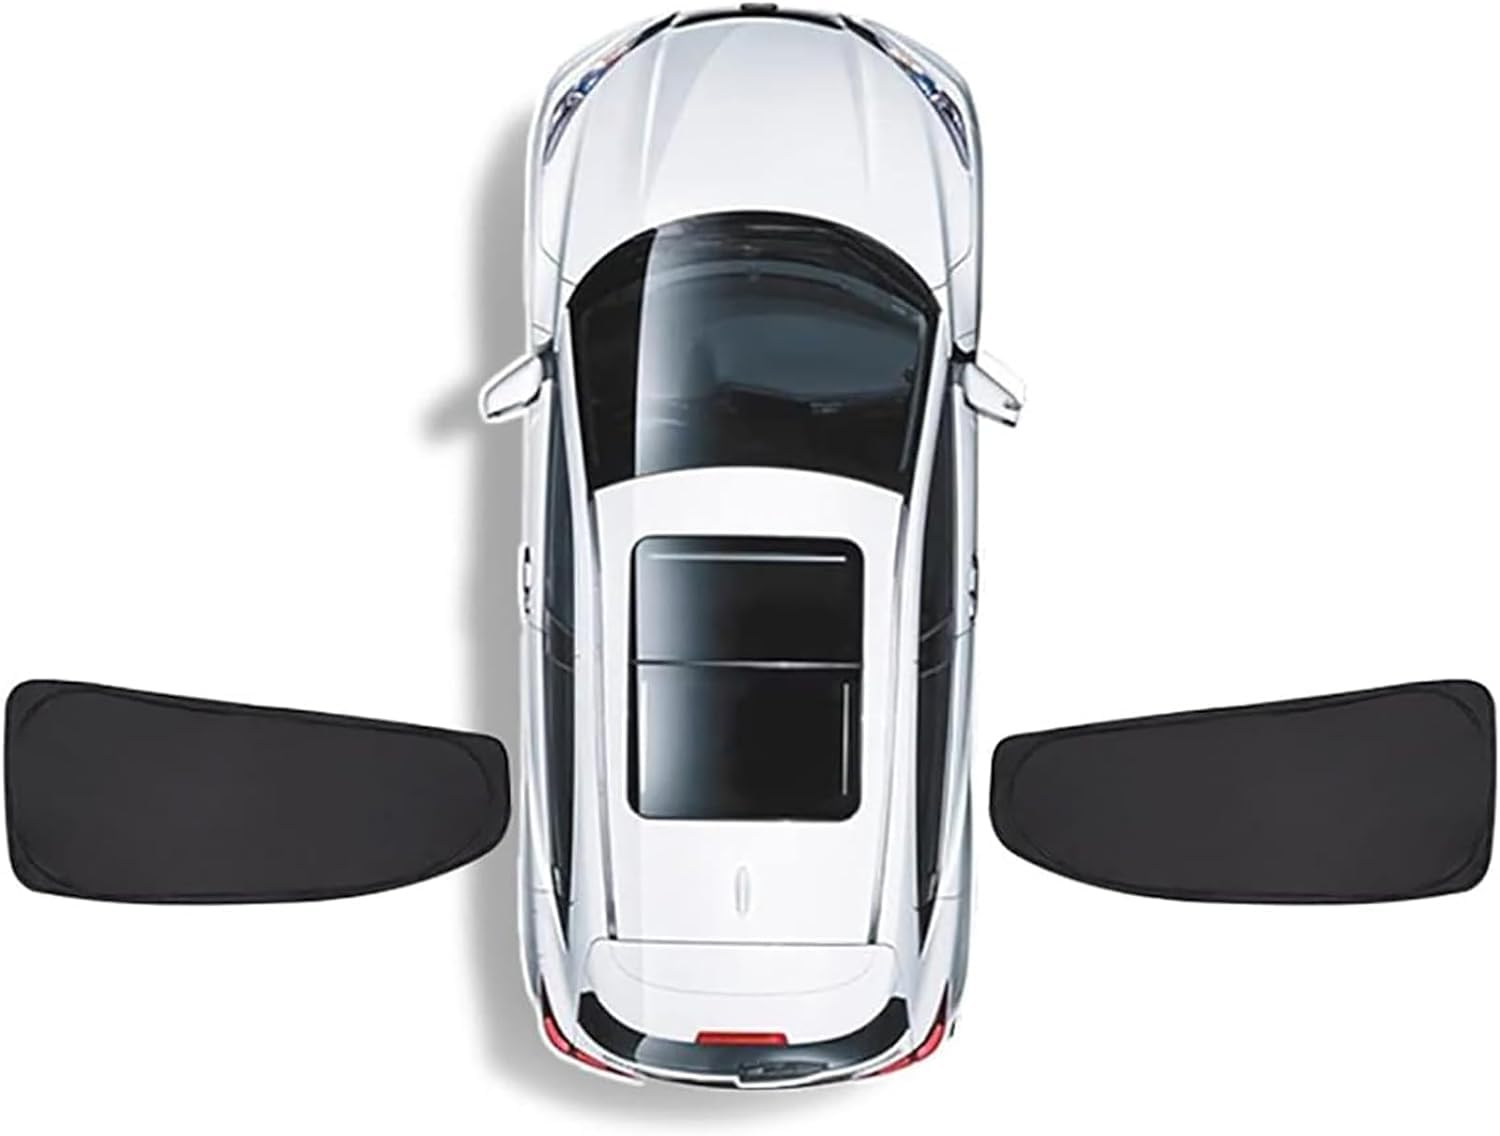 Auto-Seitenfenster-Sonnenschutz für BMW 1 Series Hatchback 5dr (F20 LCI) 2015 2016 2017 2018 2019, Front Heck Und Seitenscheibe UV-Schutz Privatsphäre Schutz Sonnenblende,C/2Reardoors von GZWQSB88